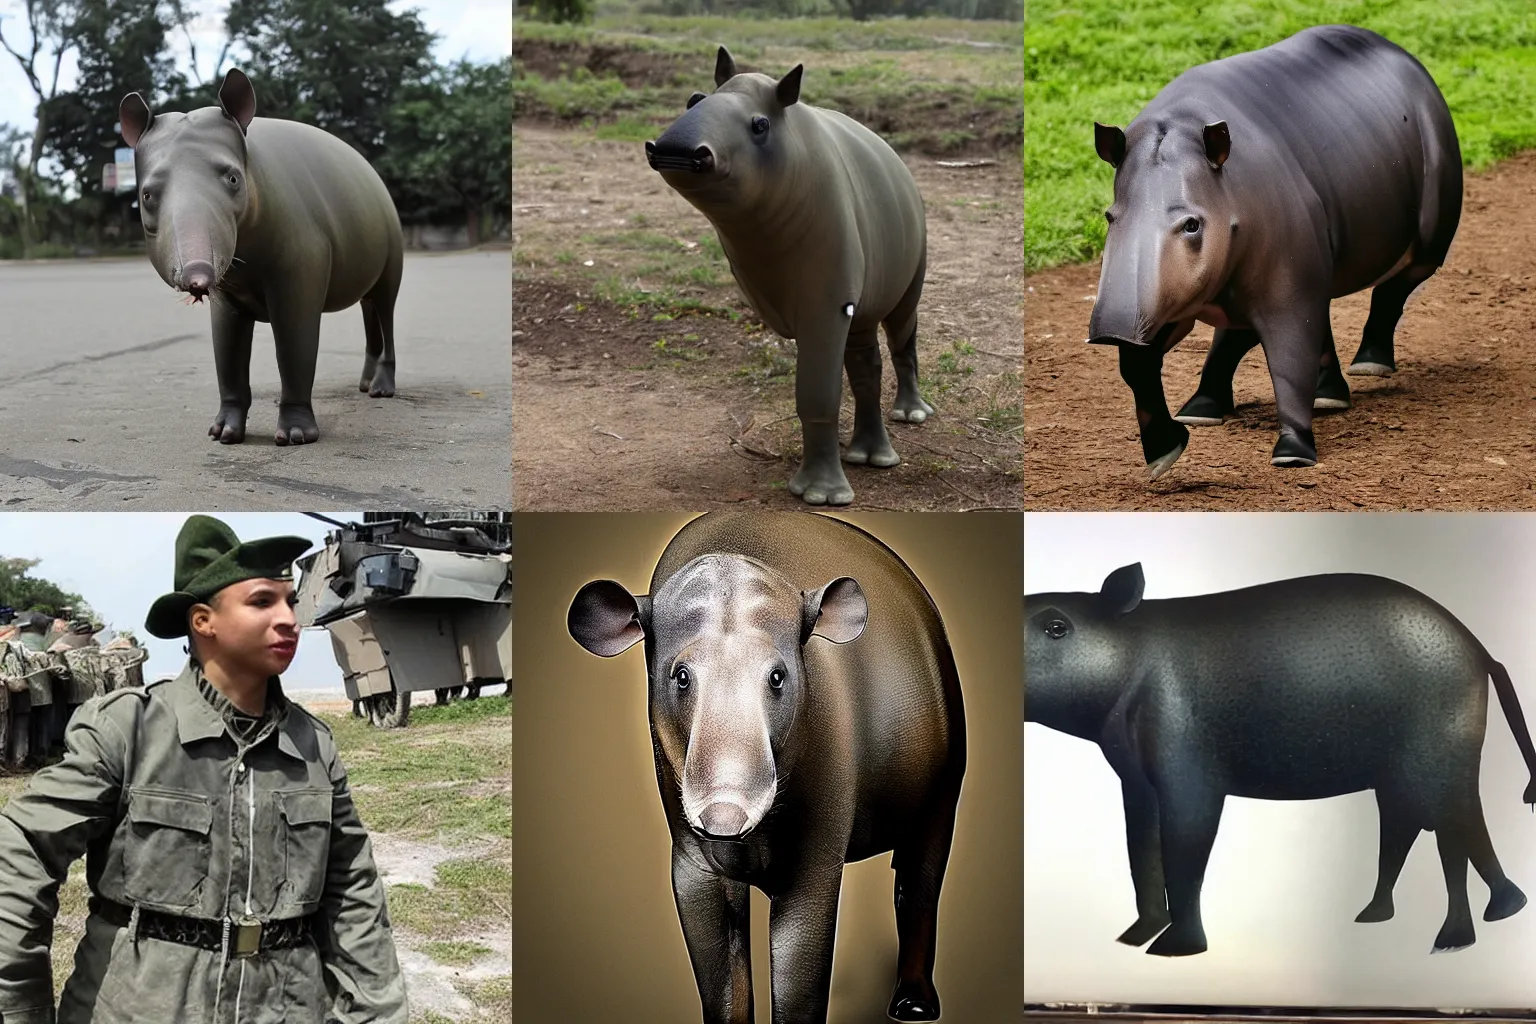 Prompt: tapir wearing military uniform